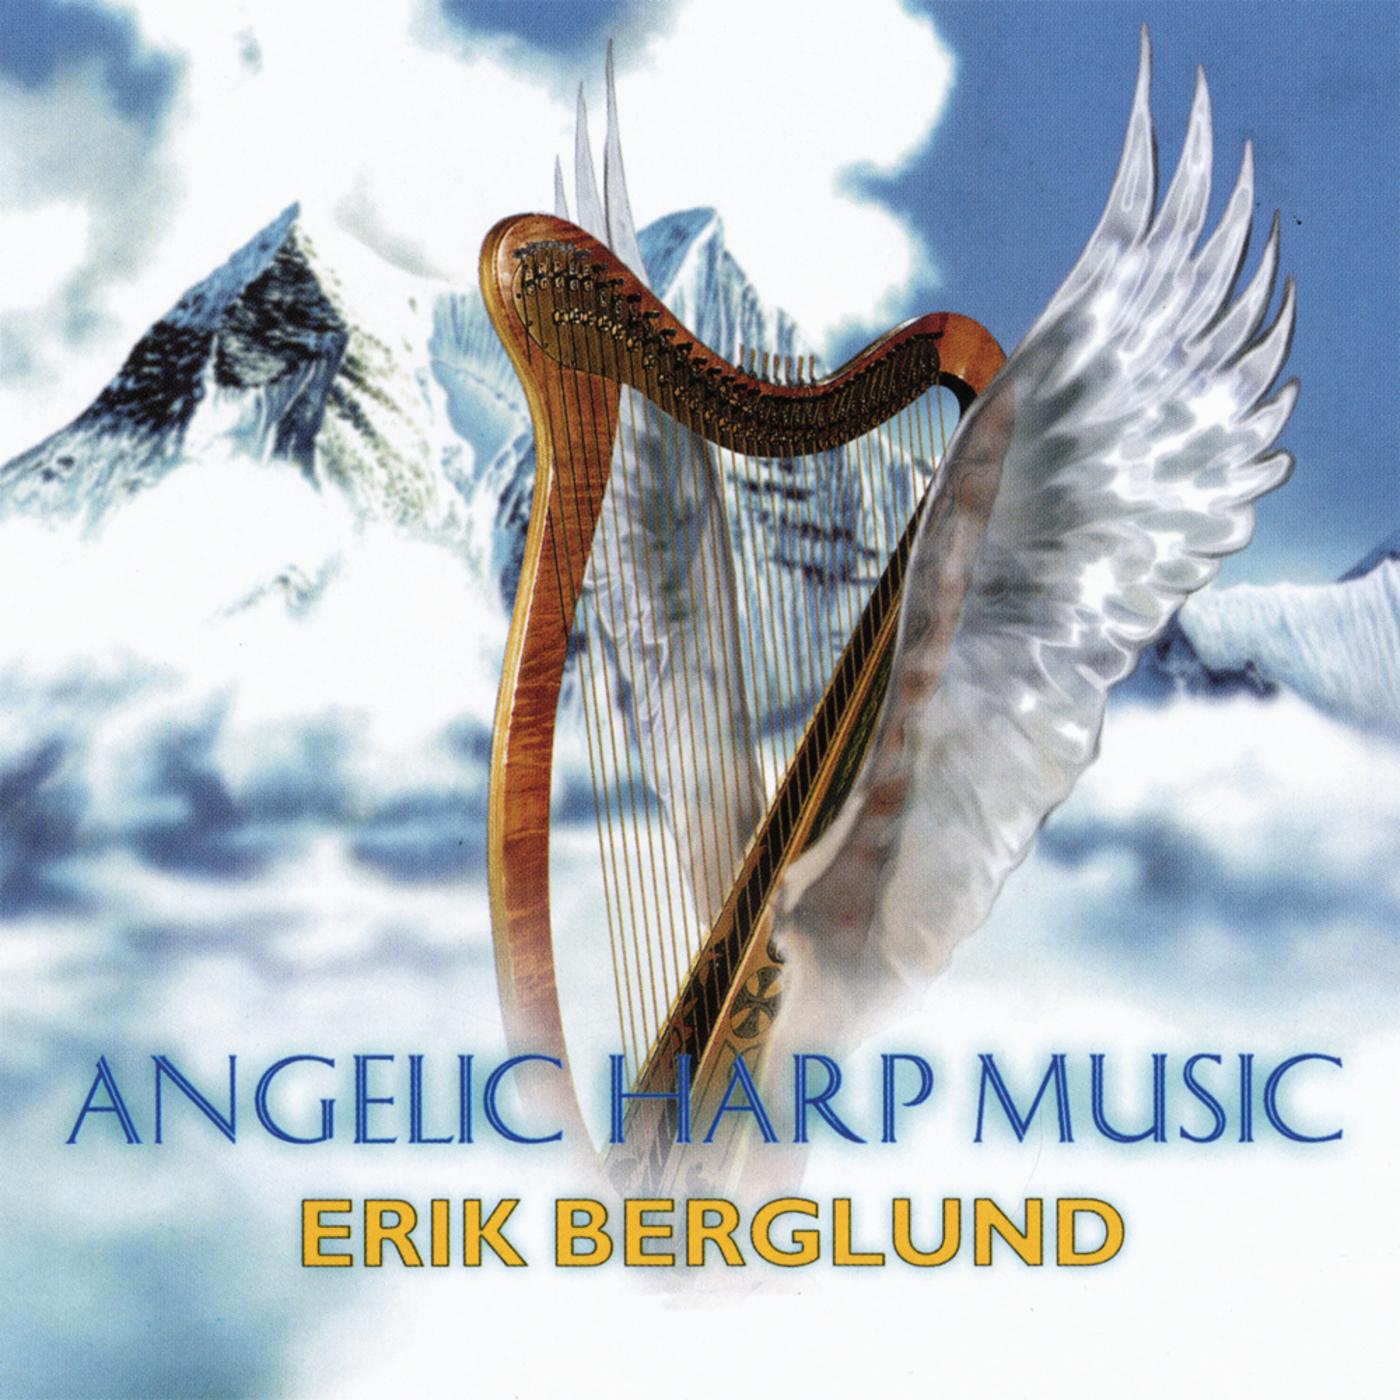 Erik Berglund - Angel of Hope